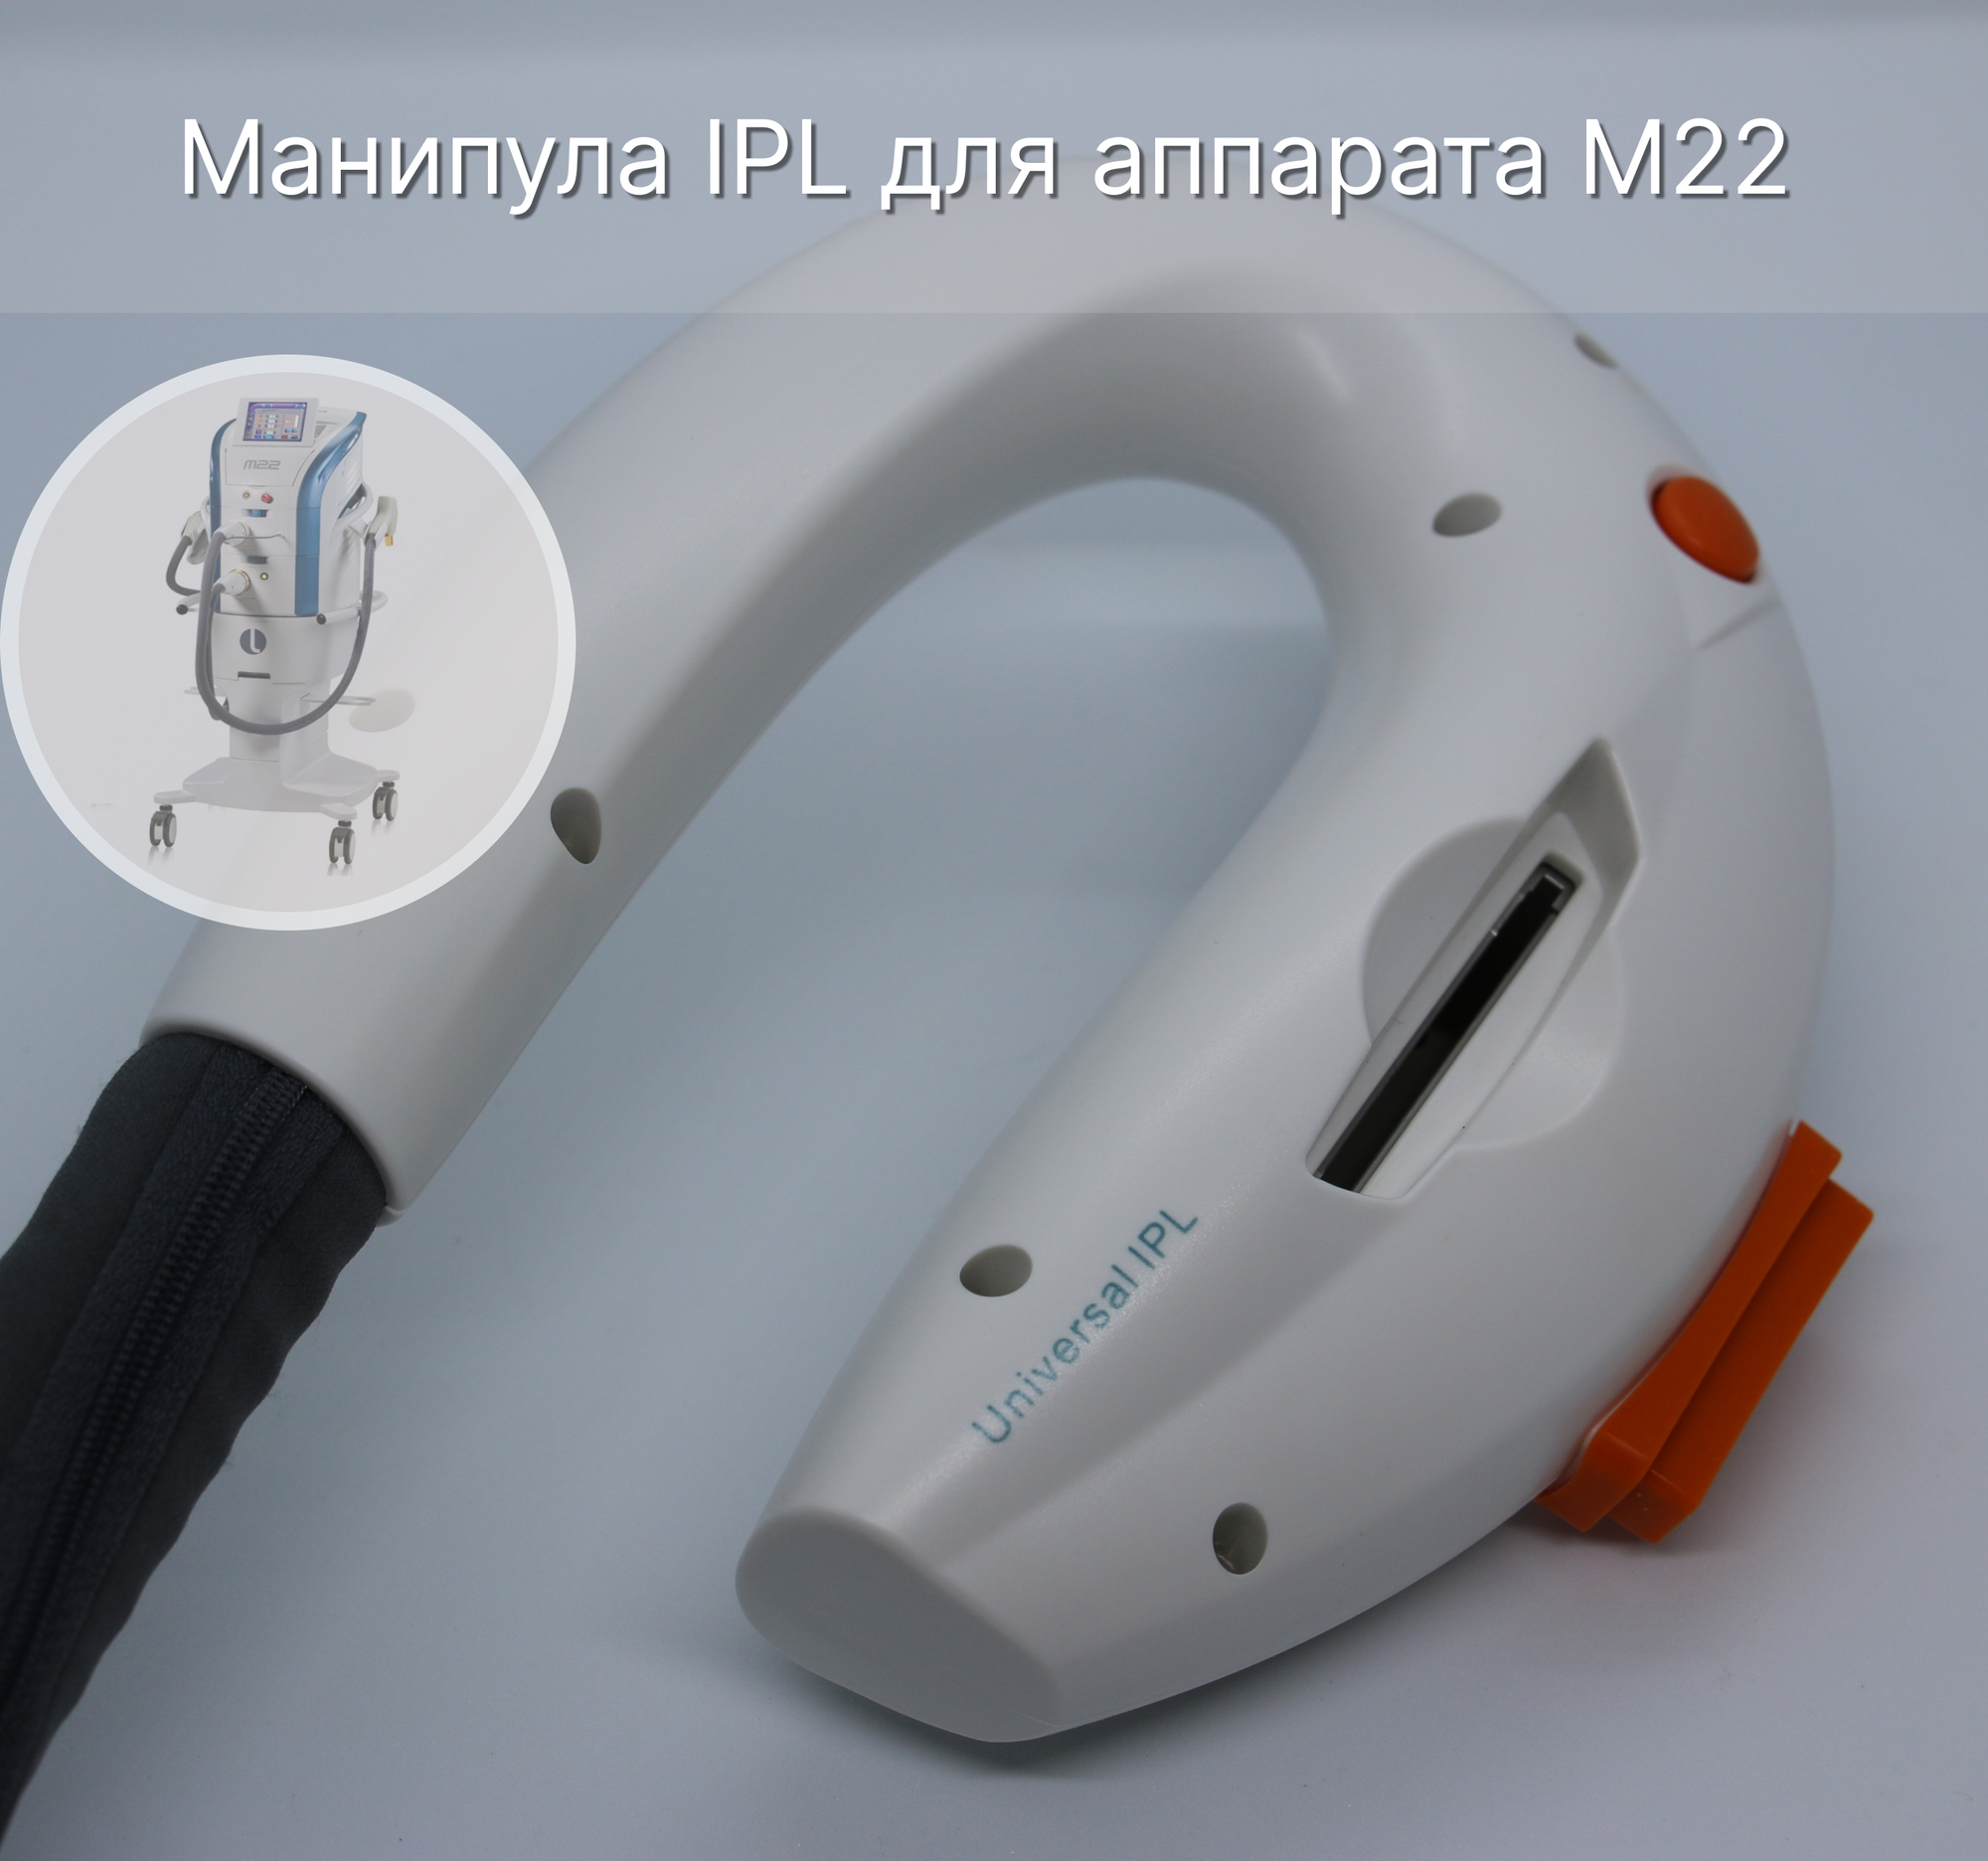 Манипула IPL для М22